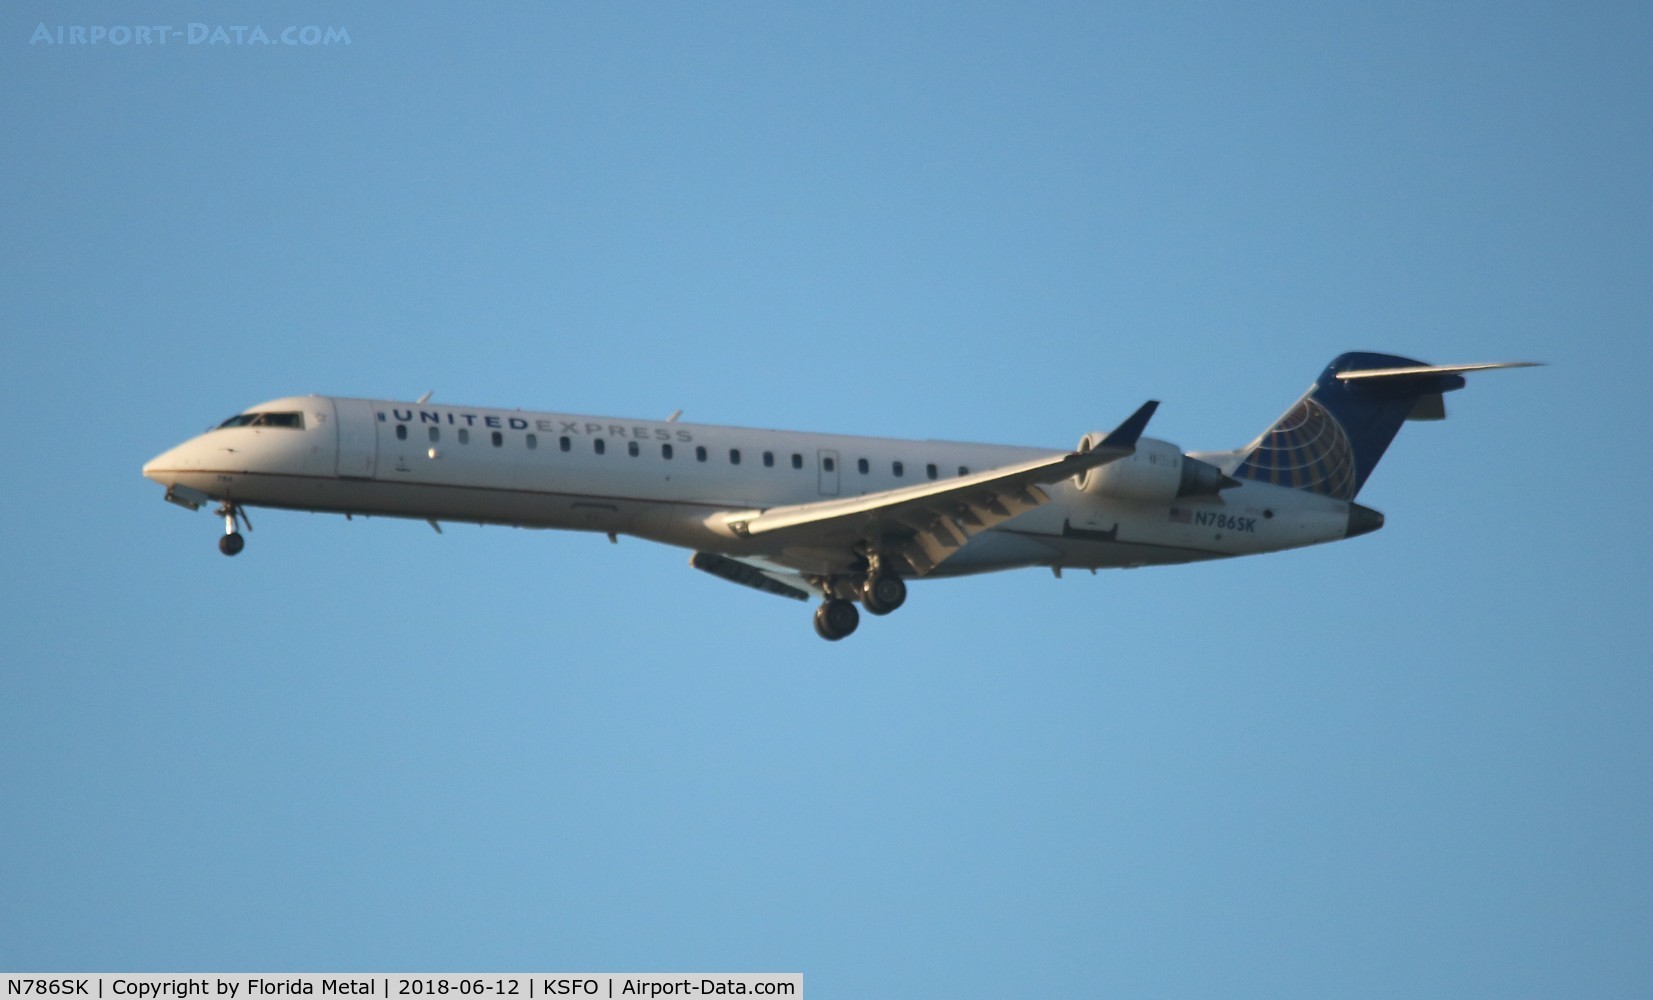 N786SK, 2009 Bombardier CRJ-700 (CL-600-2C10) Regional Jet C/N 10286, United Express